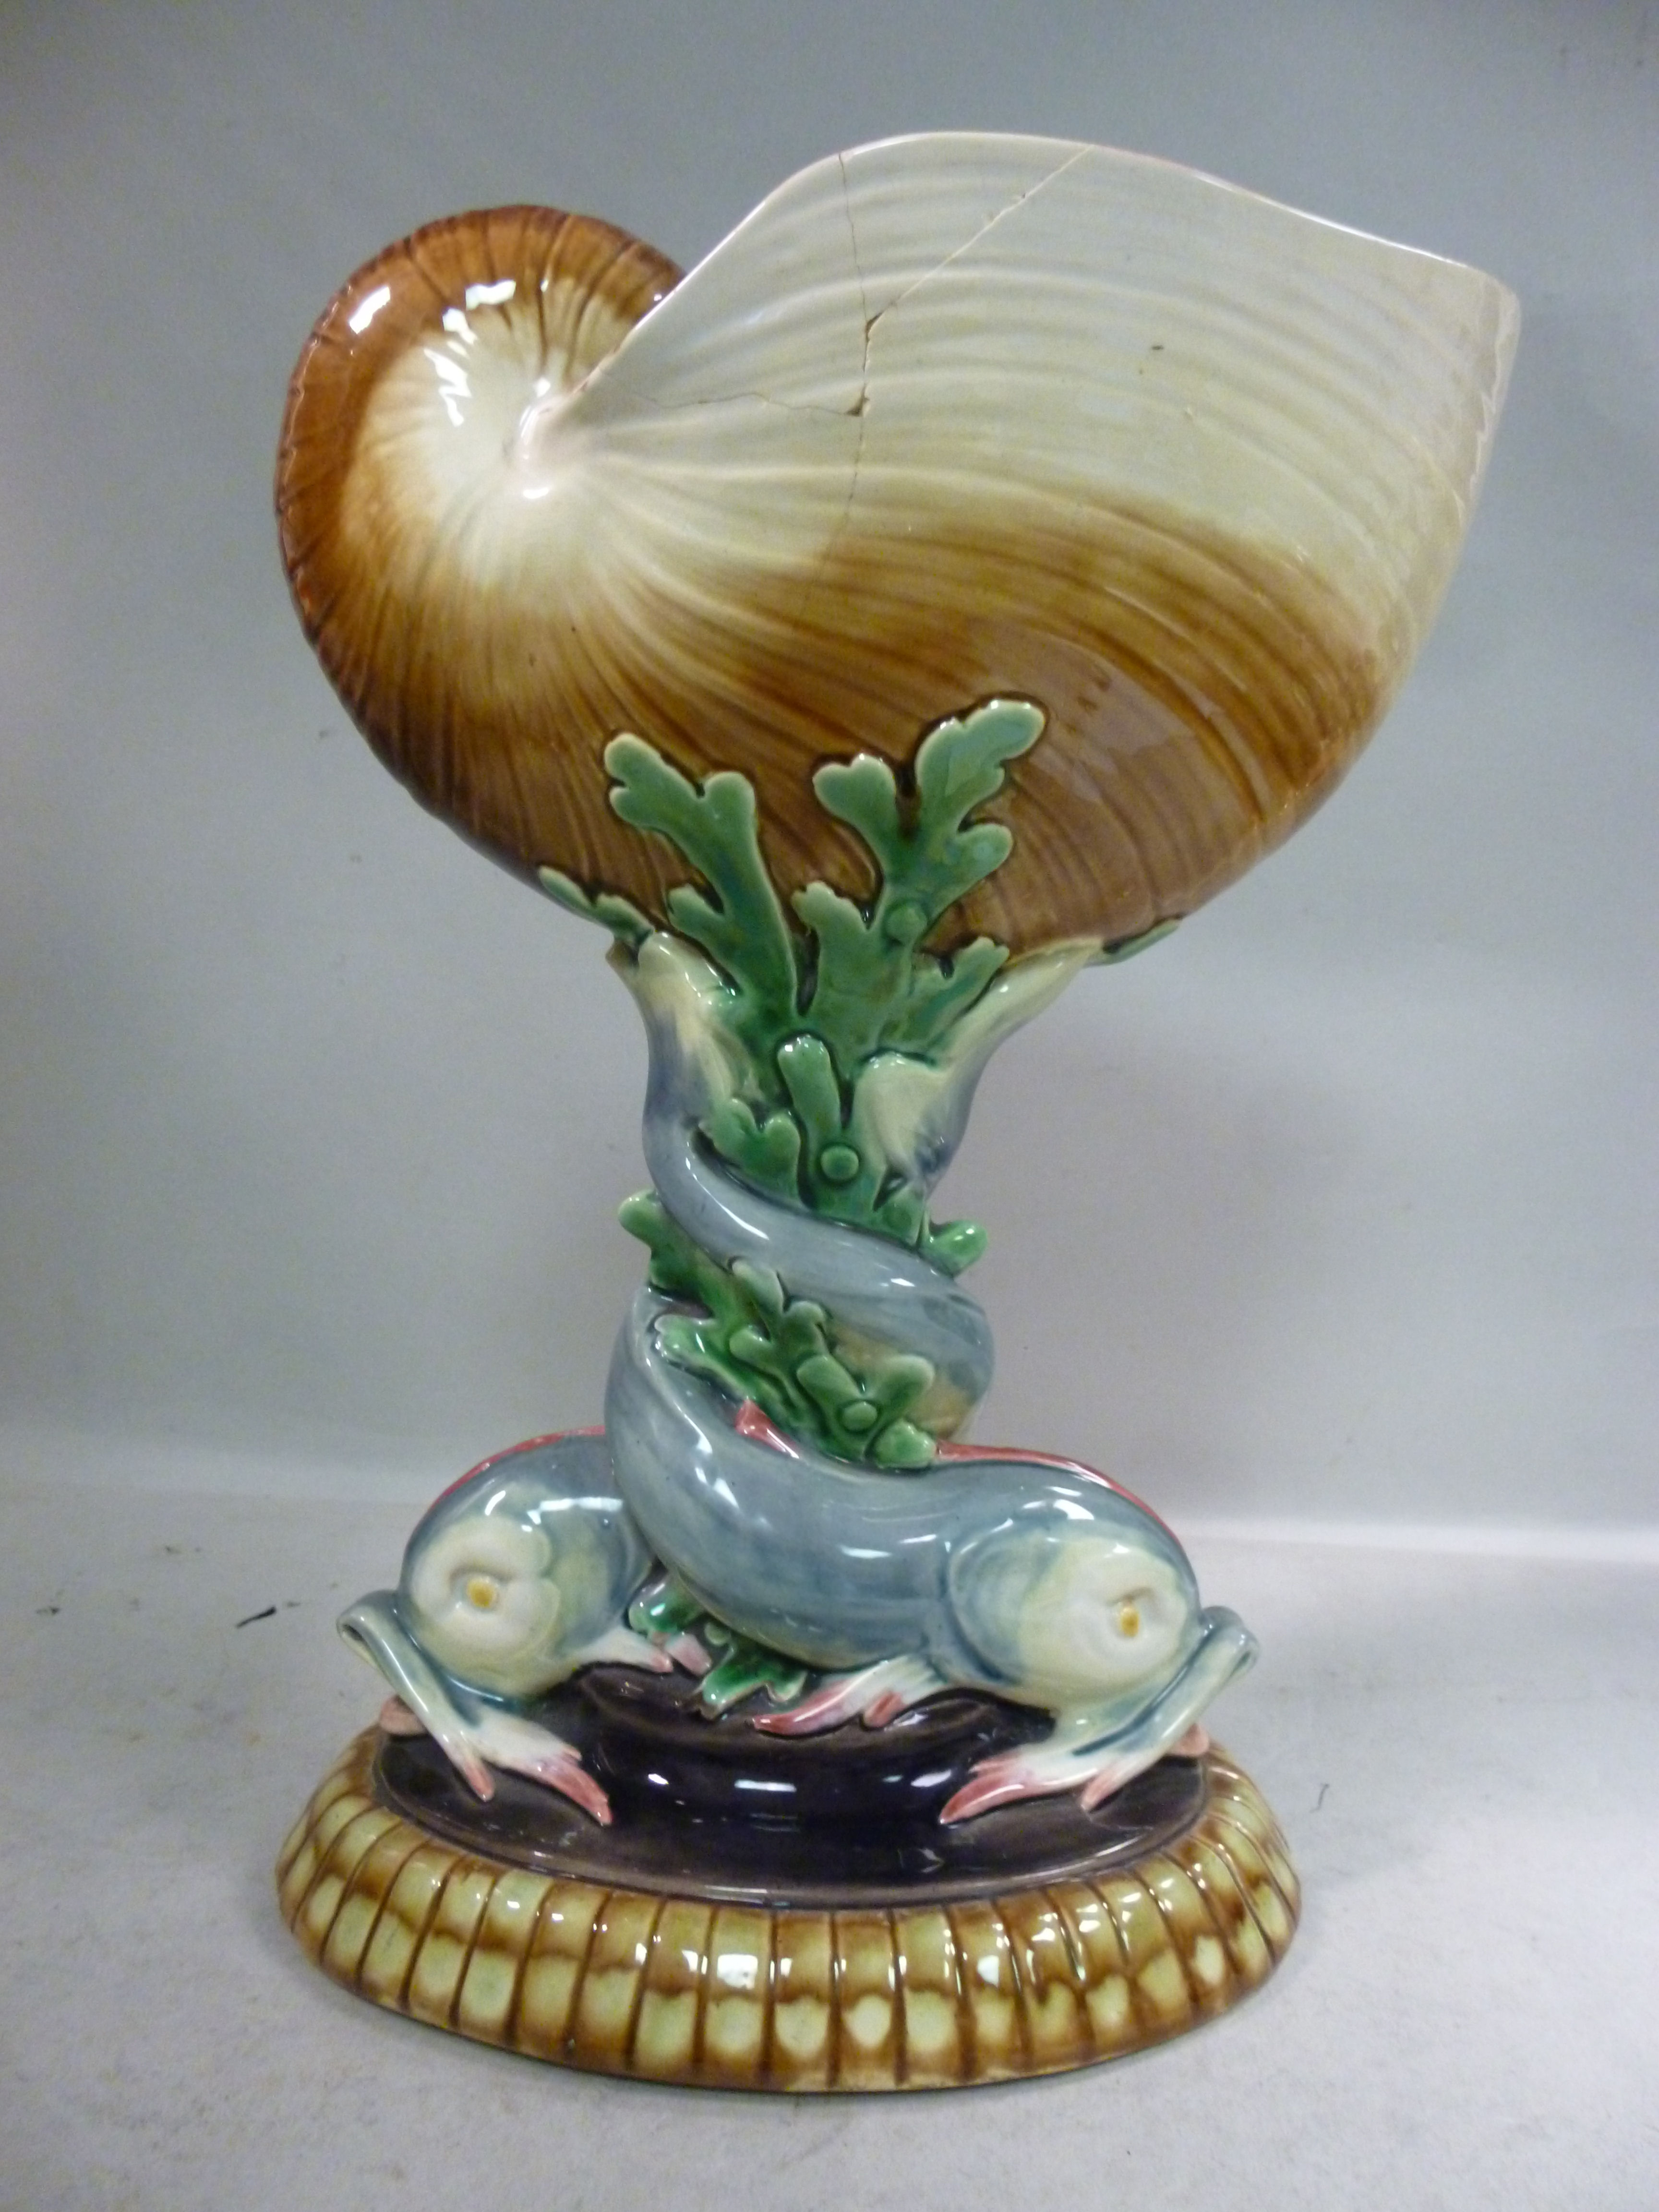 A Minton china nautilus shell design vas